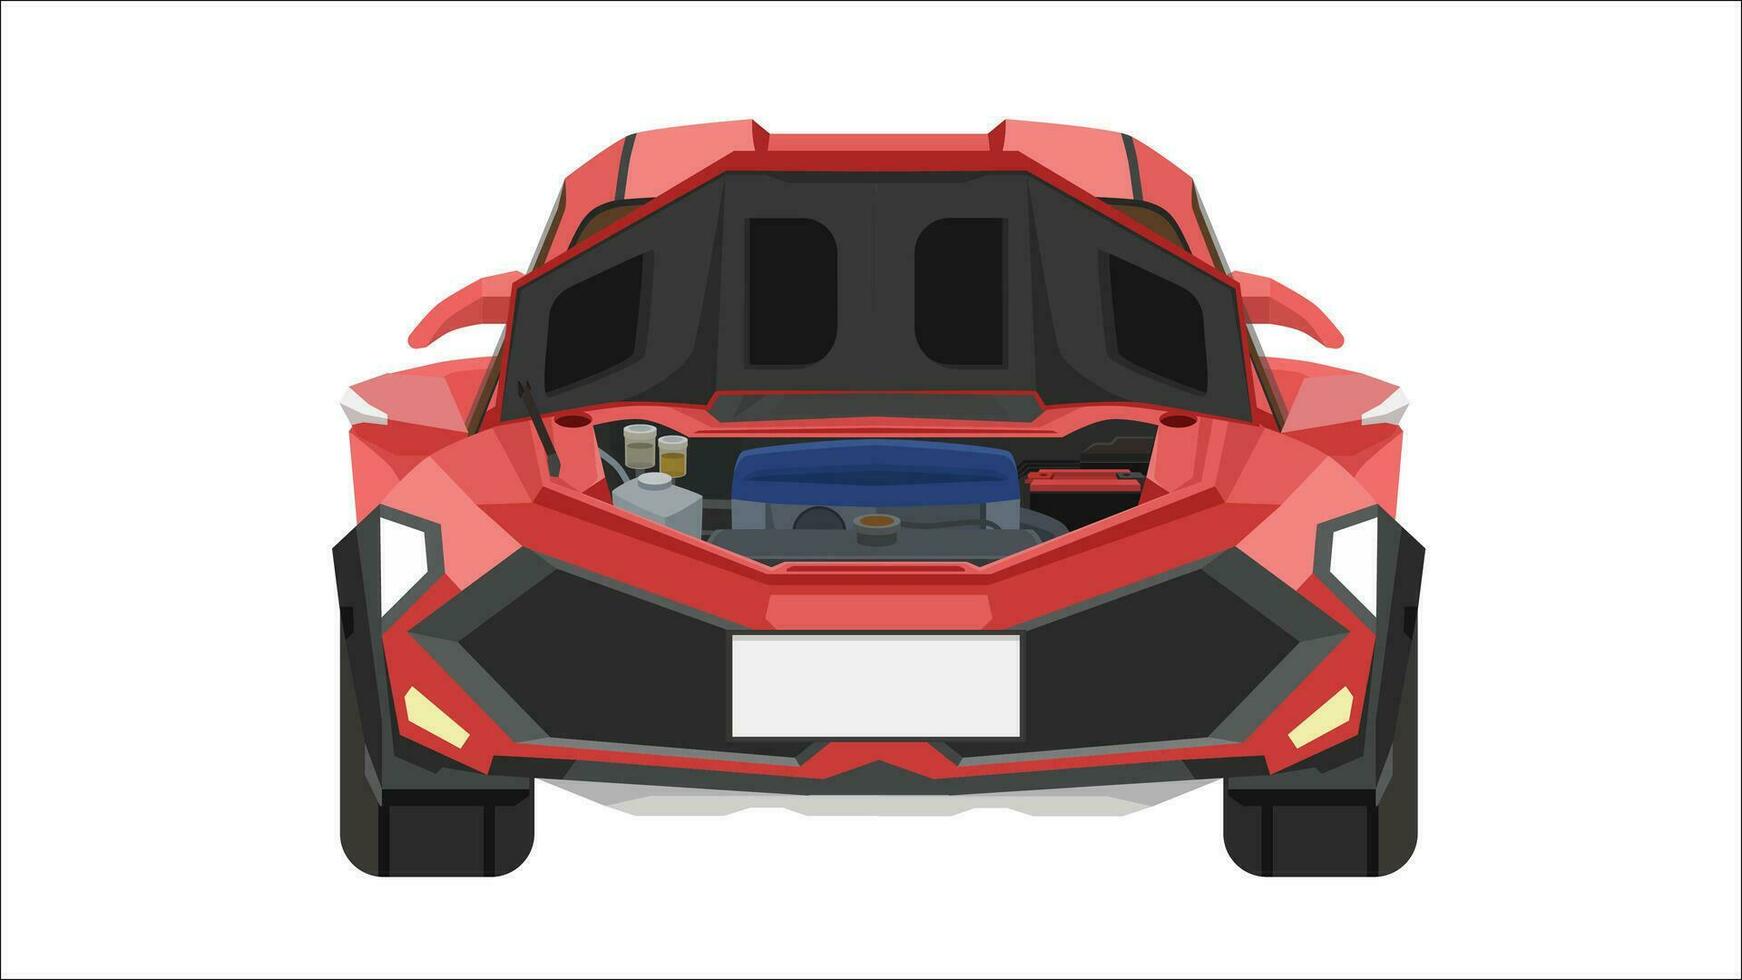 vektor eller illustratör främre se av bil. sport bil röd Färg. separerande de främre och interiör skikten av de bil. huva öppen kan ser motor. isolerat vit bakgrund.